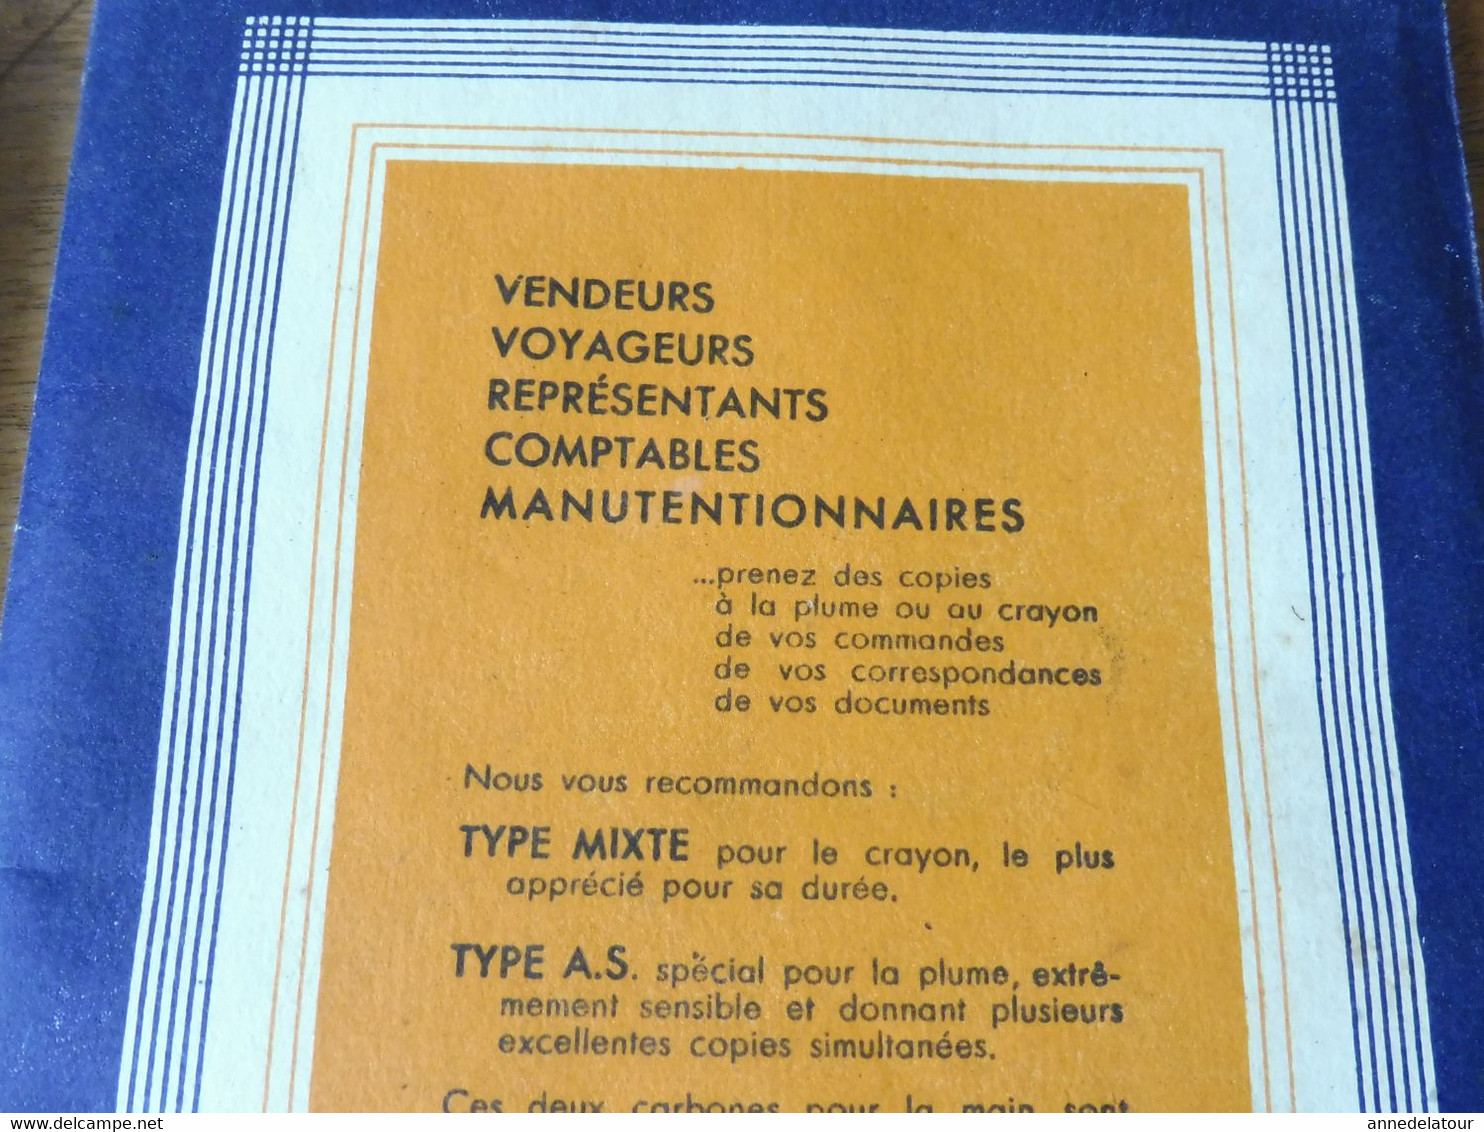 1944 PAPIER CARBONE pour plume et pour crayon  (pochette de 12 feuilles) marque ARMOR - pour vendeurs , voyageurs, Etc